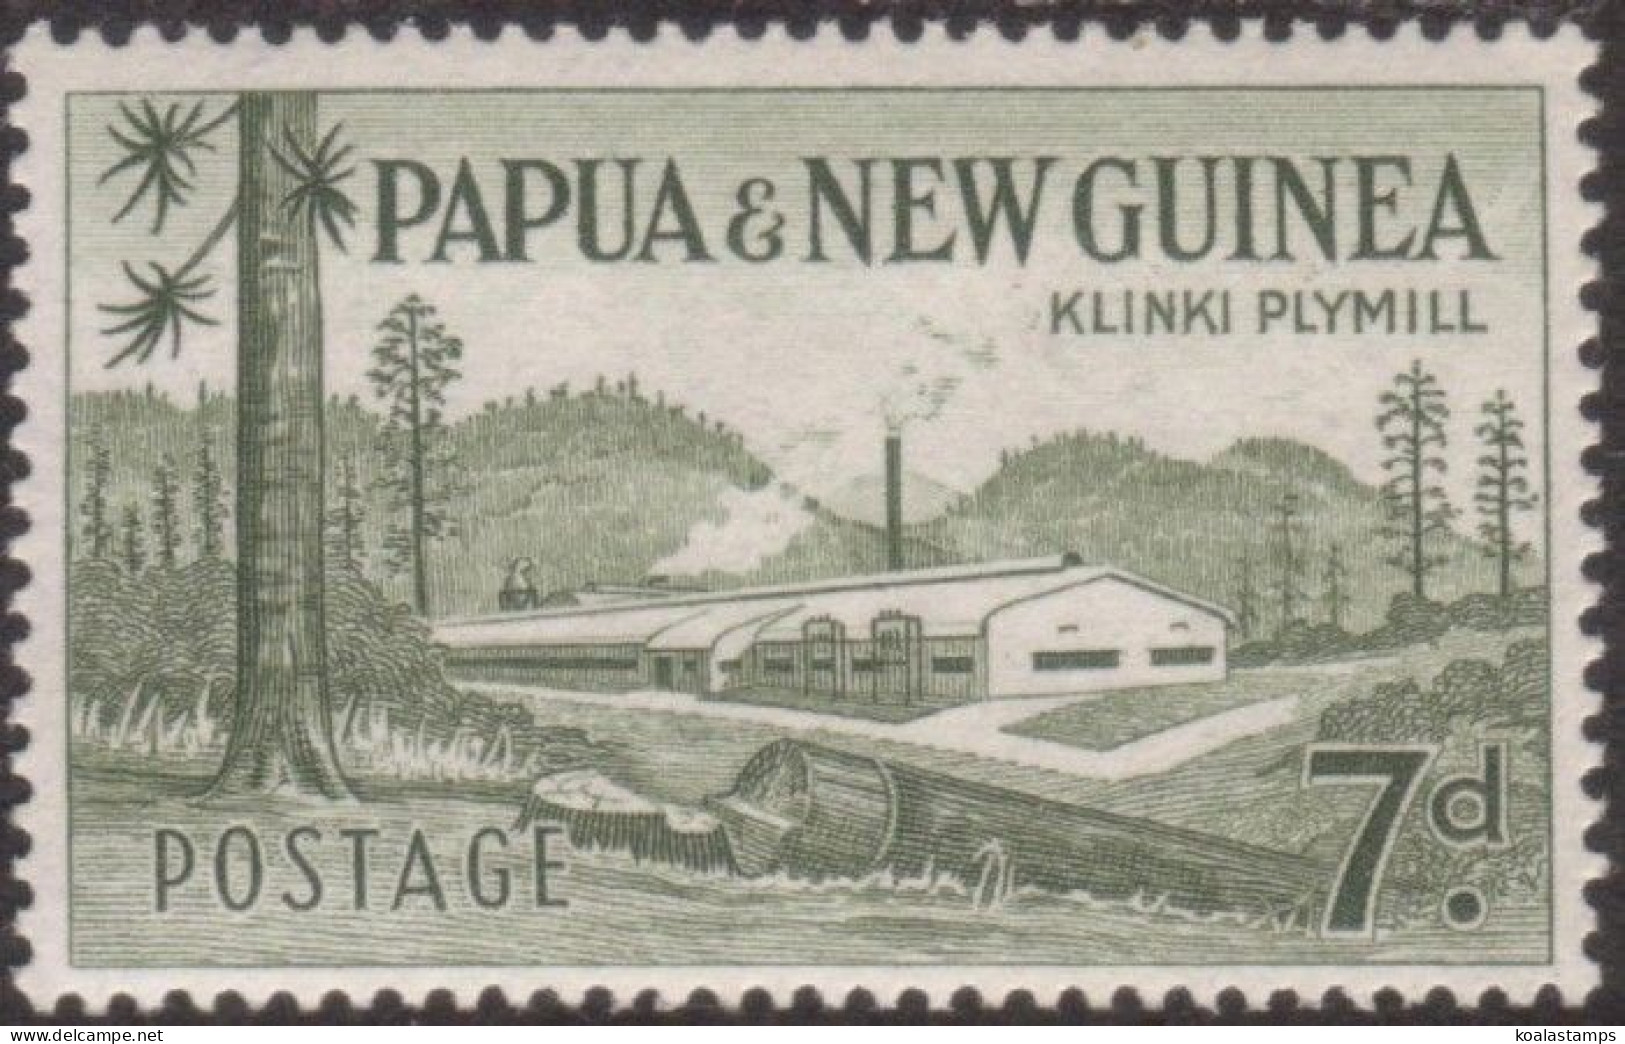 Papua New Guinea 1958 SG20 7d Klinki Plymill MLH - Papouasie-Nouvelle-Guinée